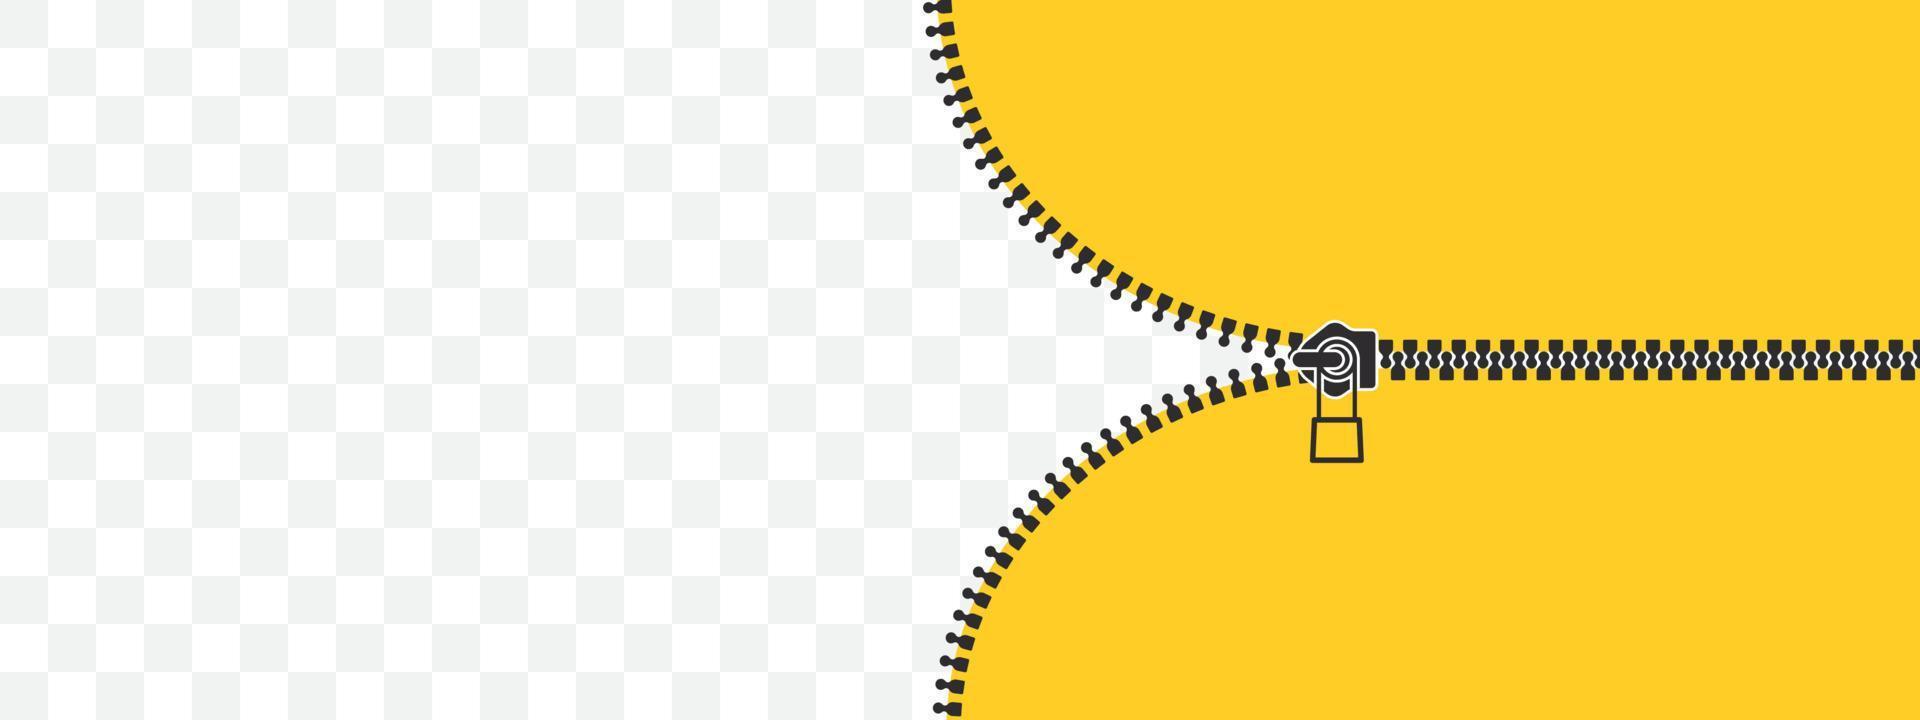 casier zip. fermeture éclair fermée et ouverte. fond jaune déboutonné. illustration vectorielle vecteur